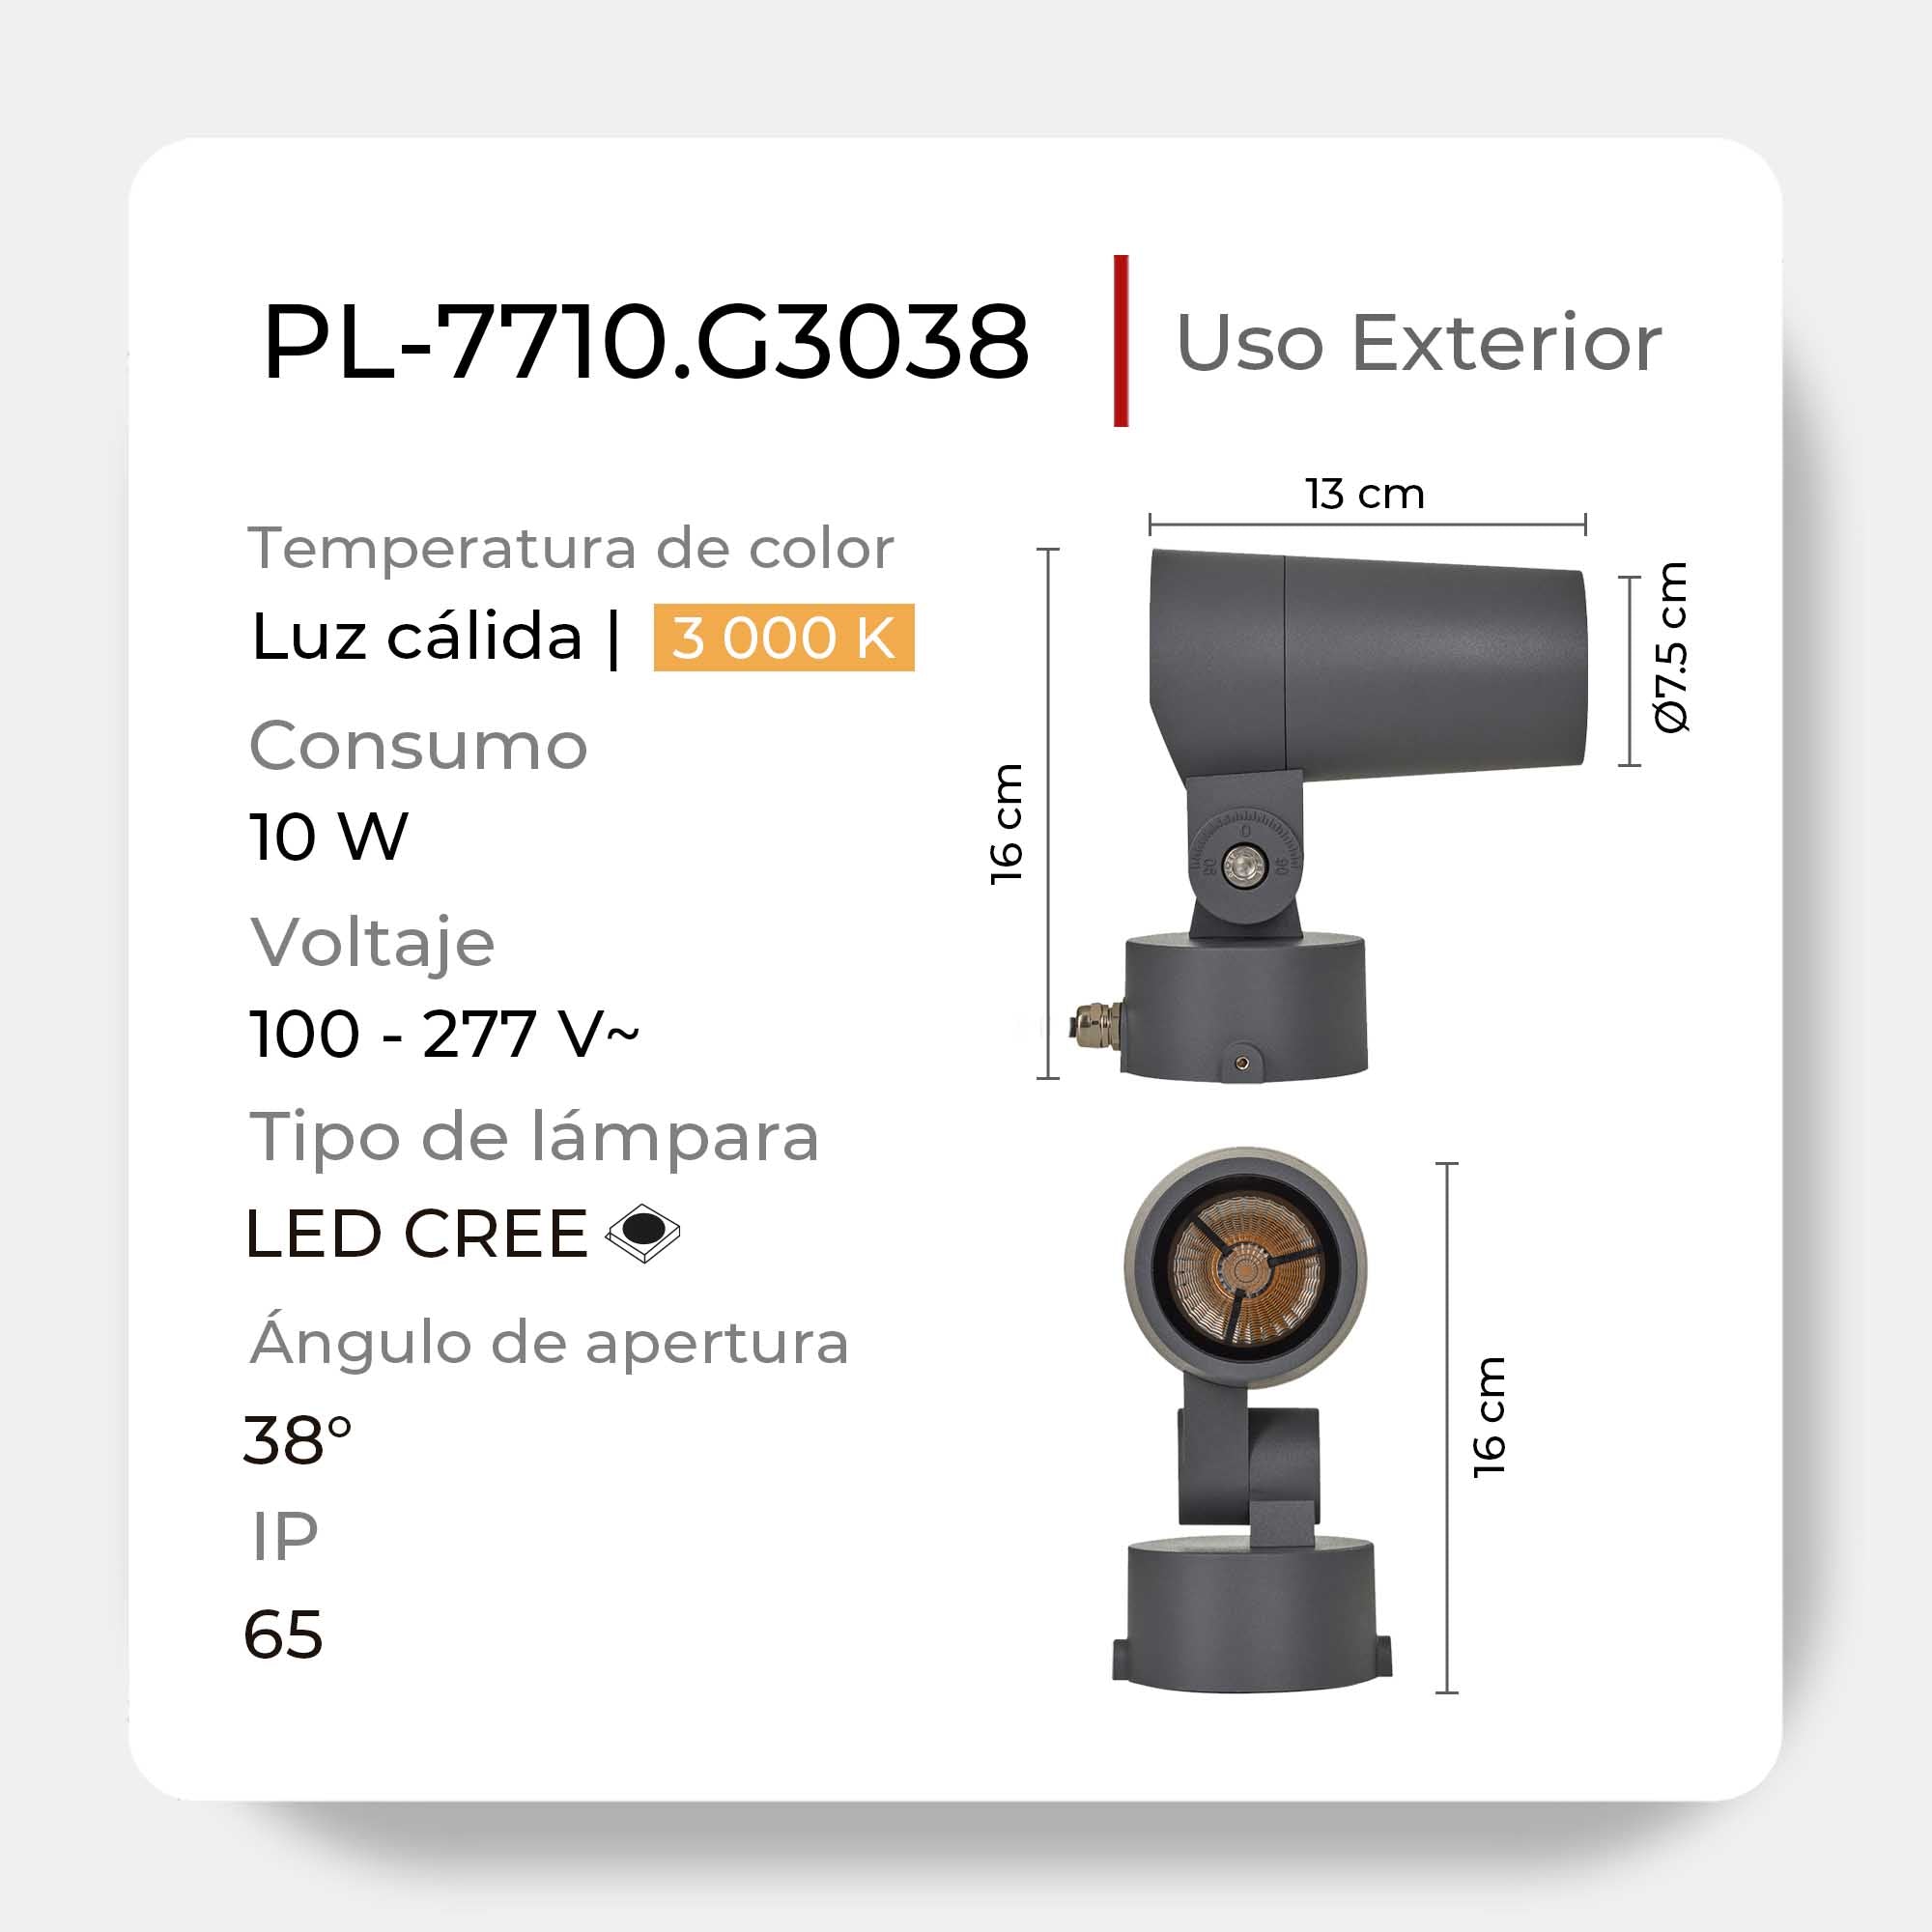 Luminaria LED para Piso PL-7710 - Iluminación Exterior de Alto Rendimiento